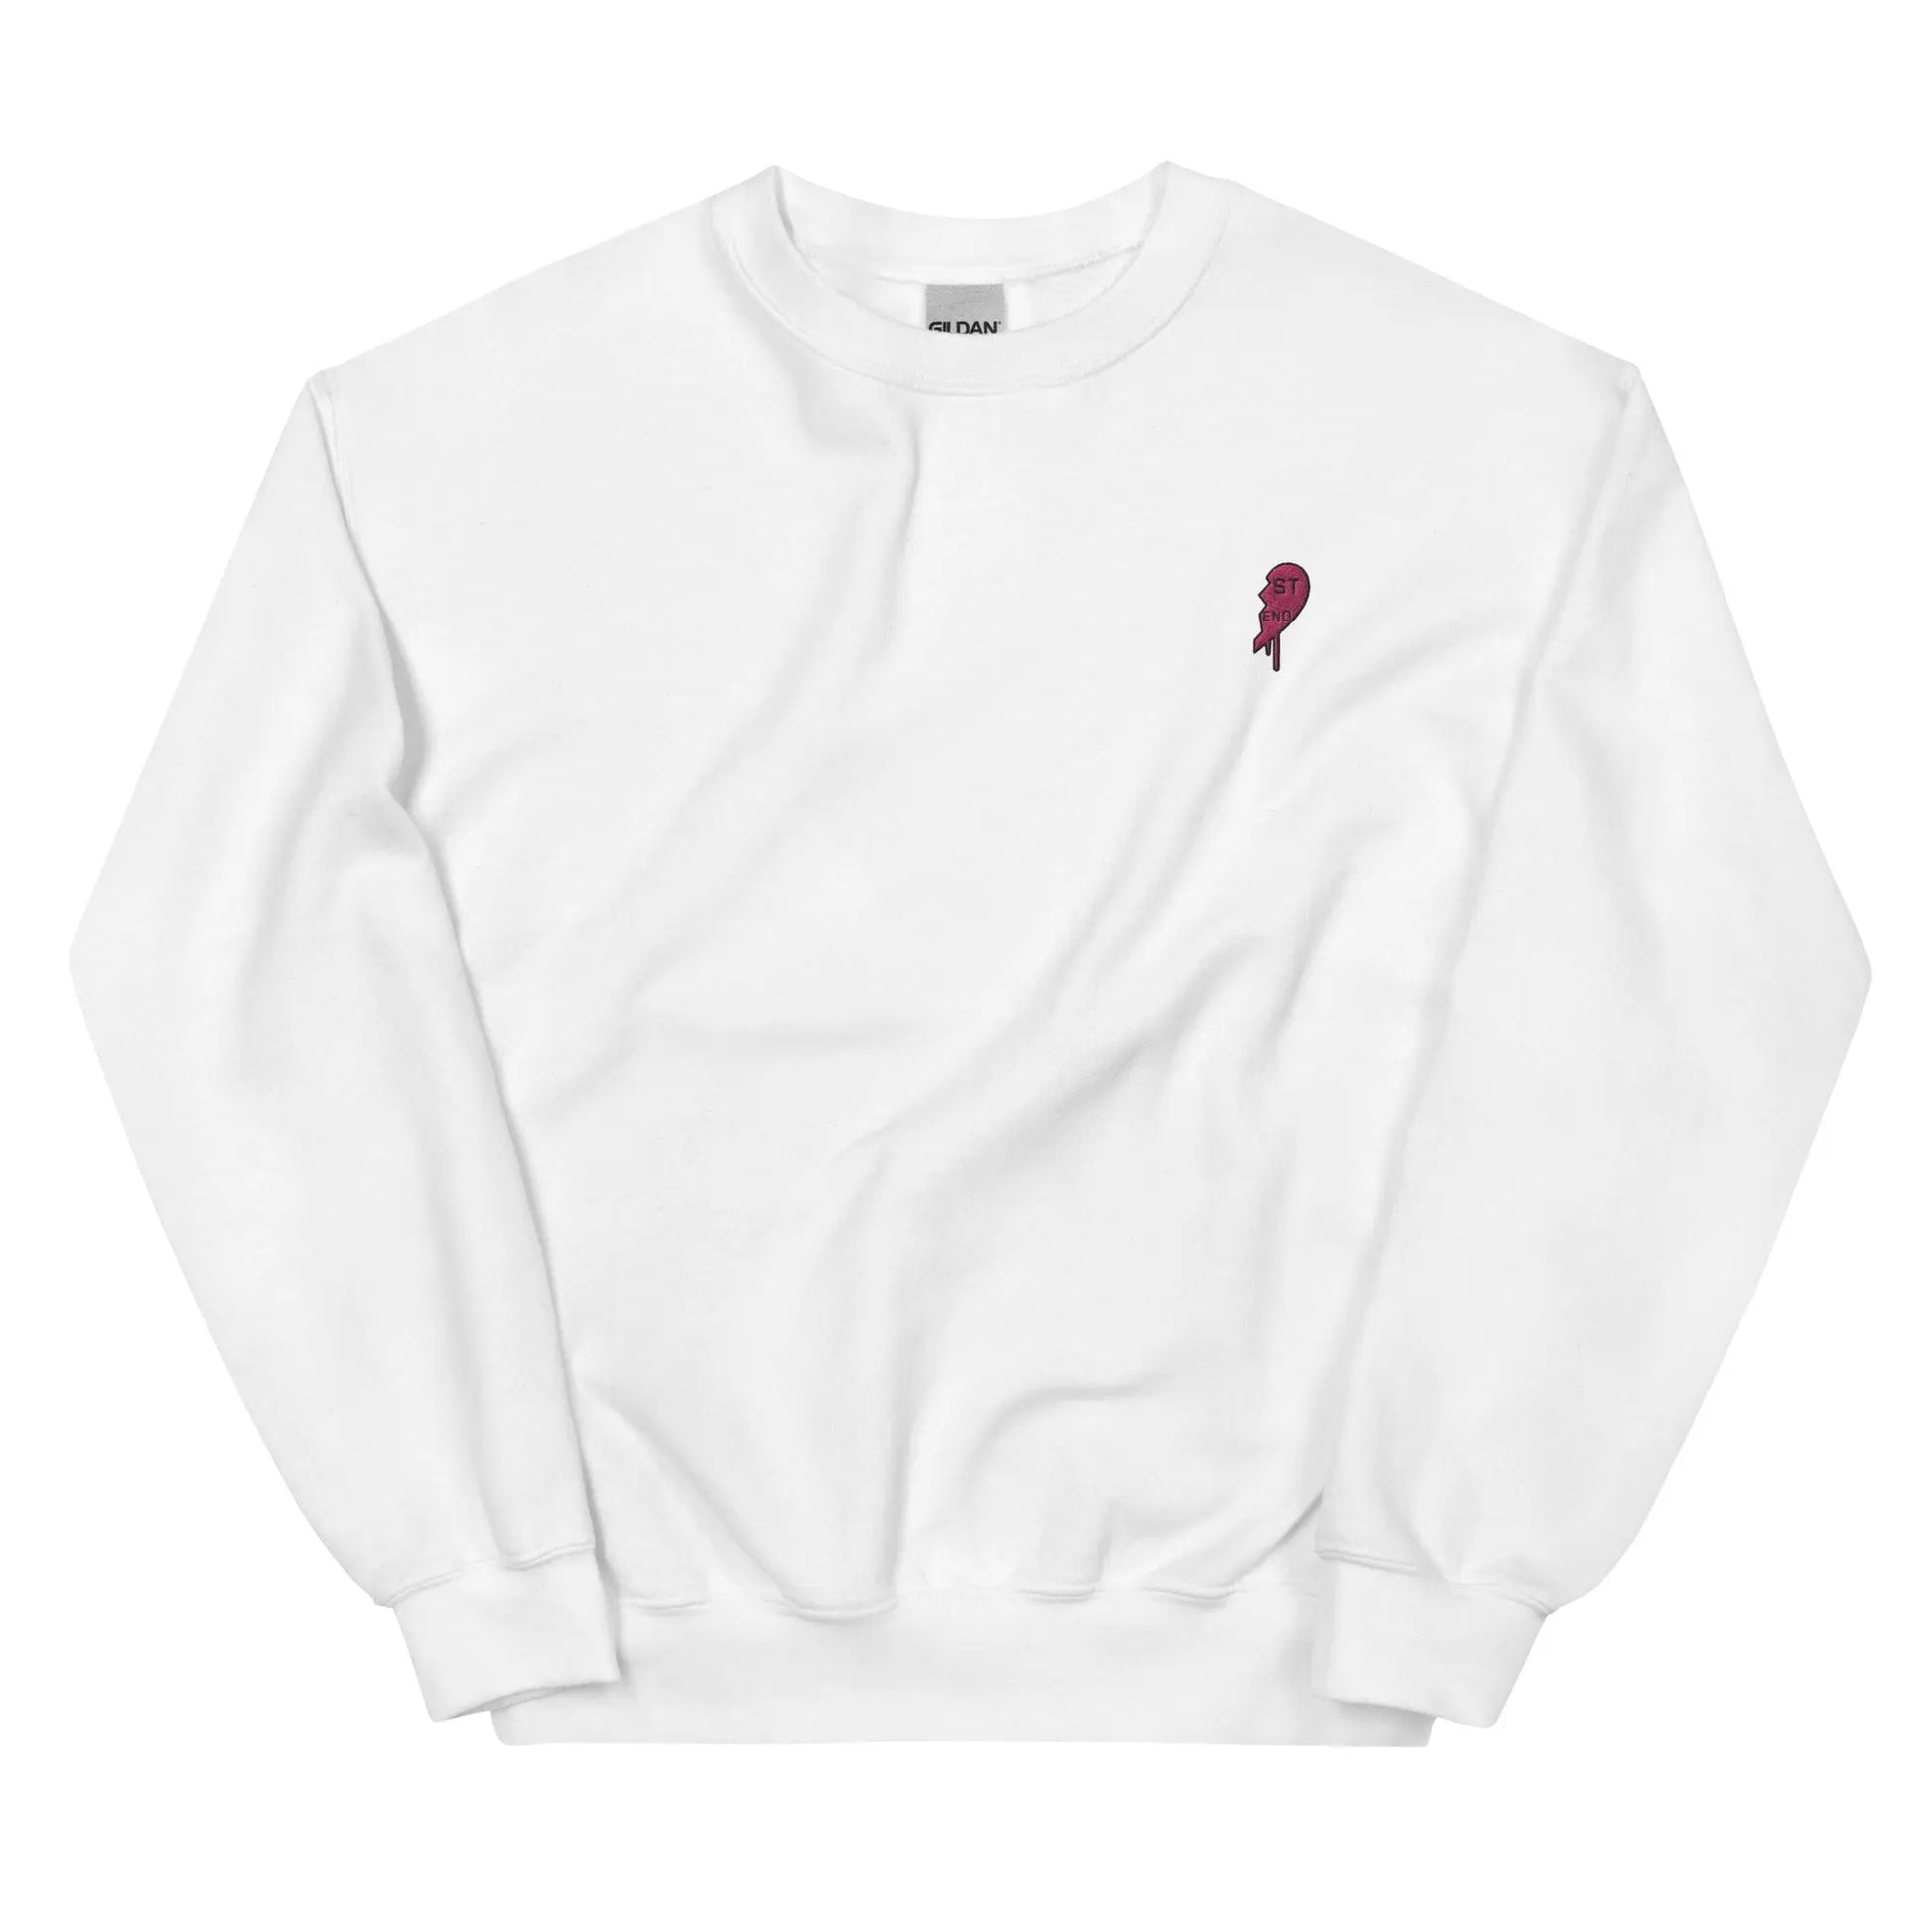 Best Friend Sweatshirt Right Half White - Image #1